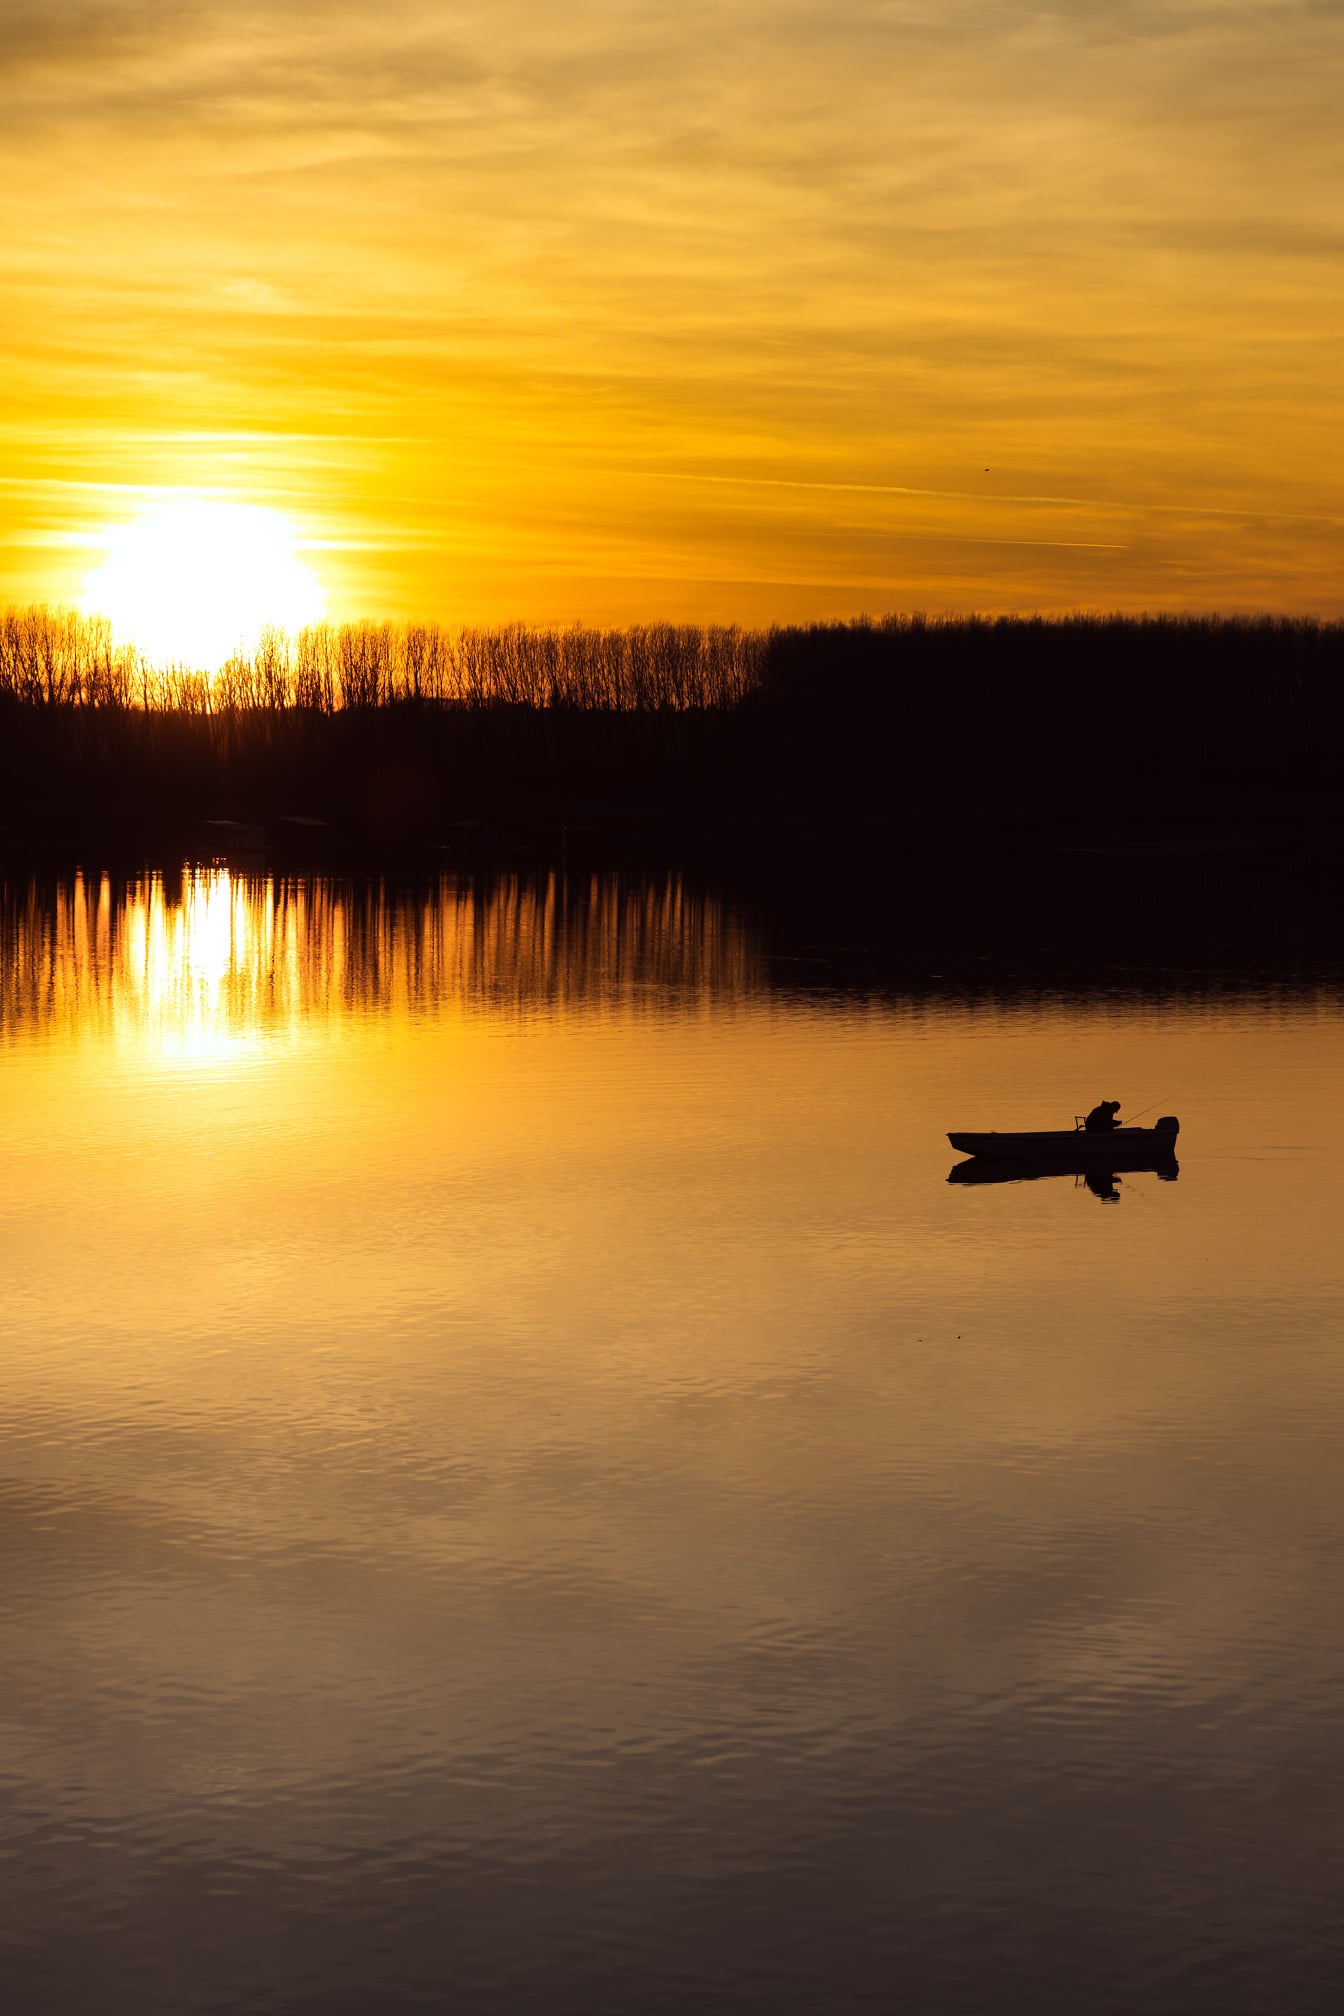 พระอาทิตย์ขึ้นสดใสเหนือริมทะเลสาบพร้อมเงาของเรือประมง